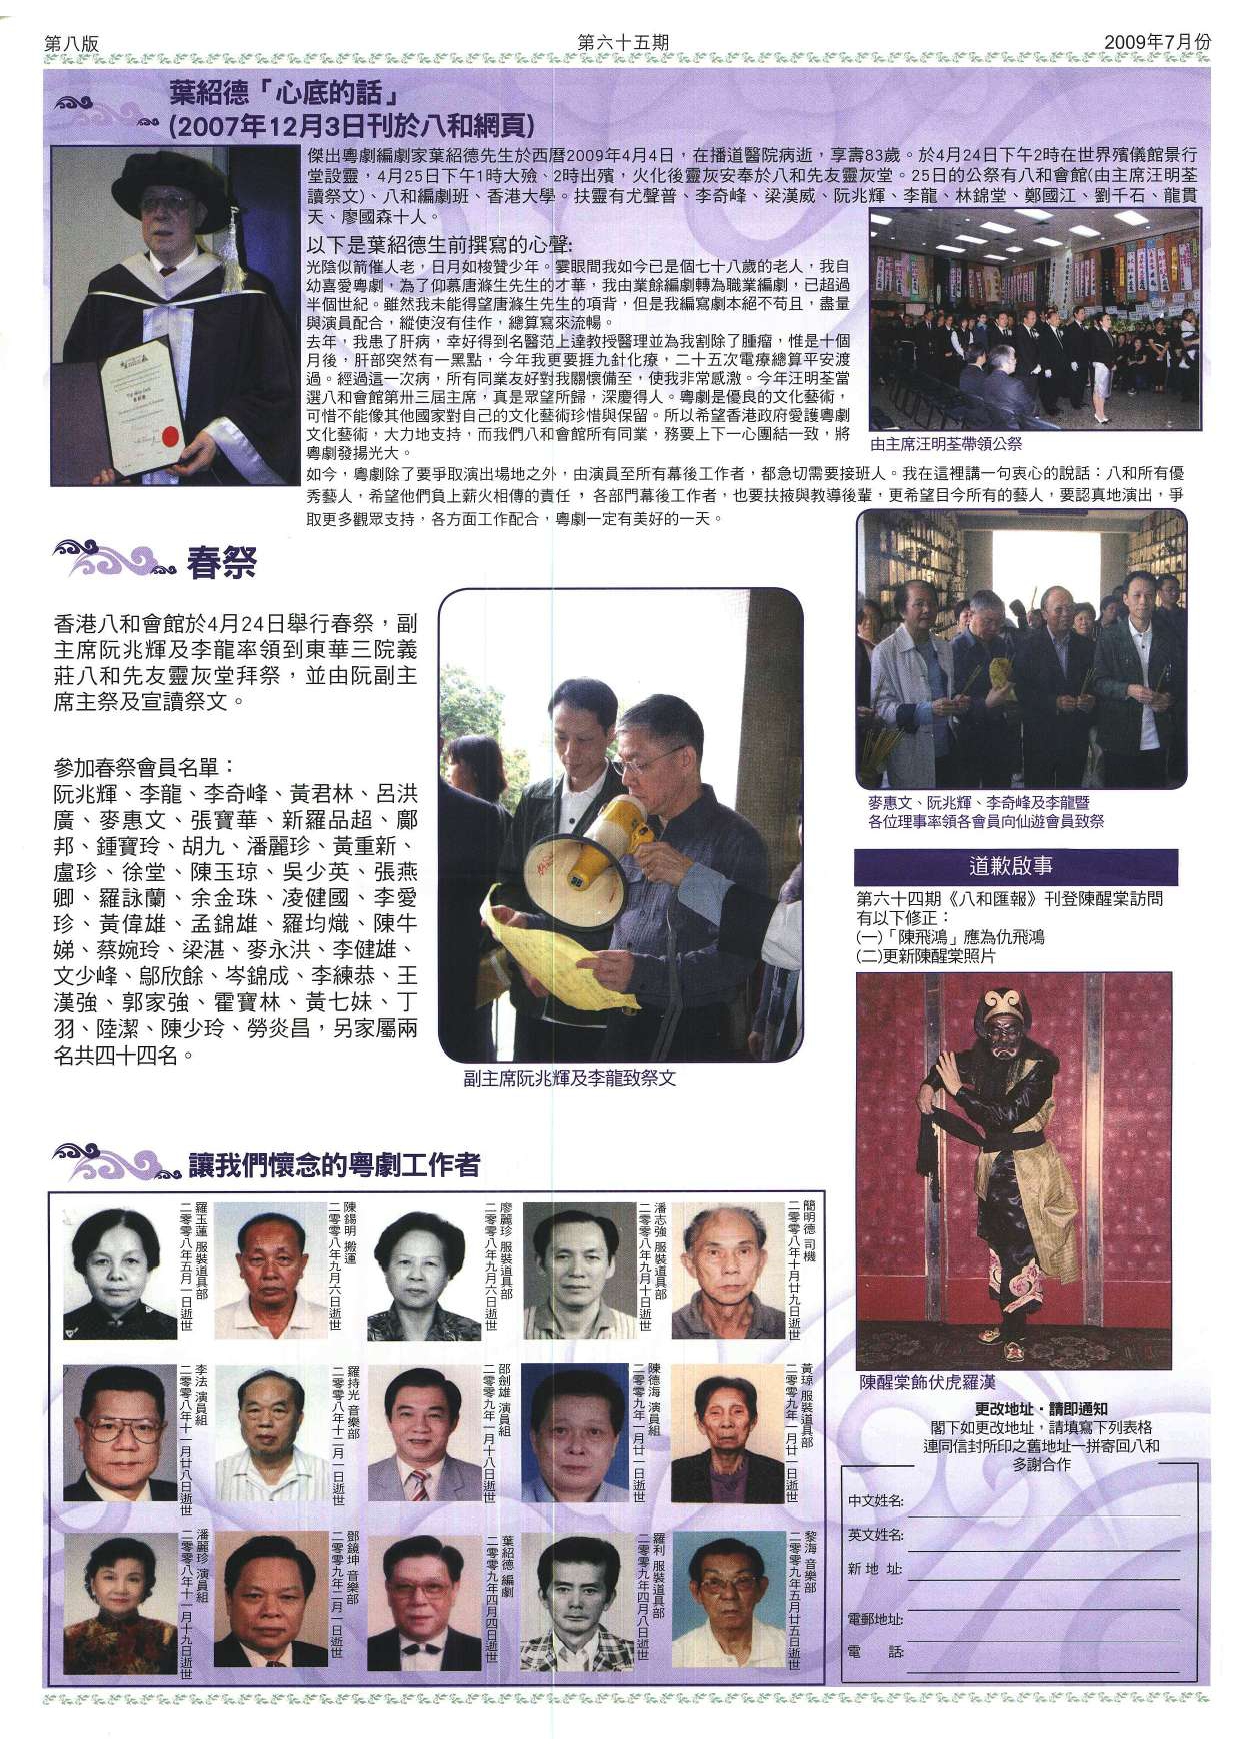 葉紹德「心底的話」 | 香港八和會館春祭  | 讓我們懷念的粵劇工作者